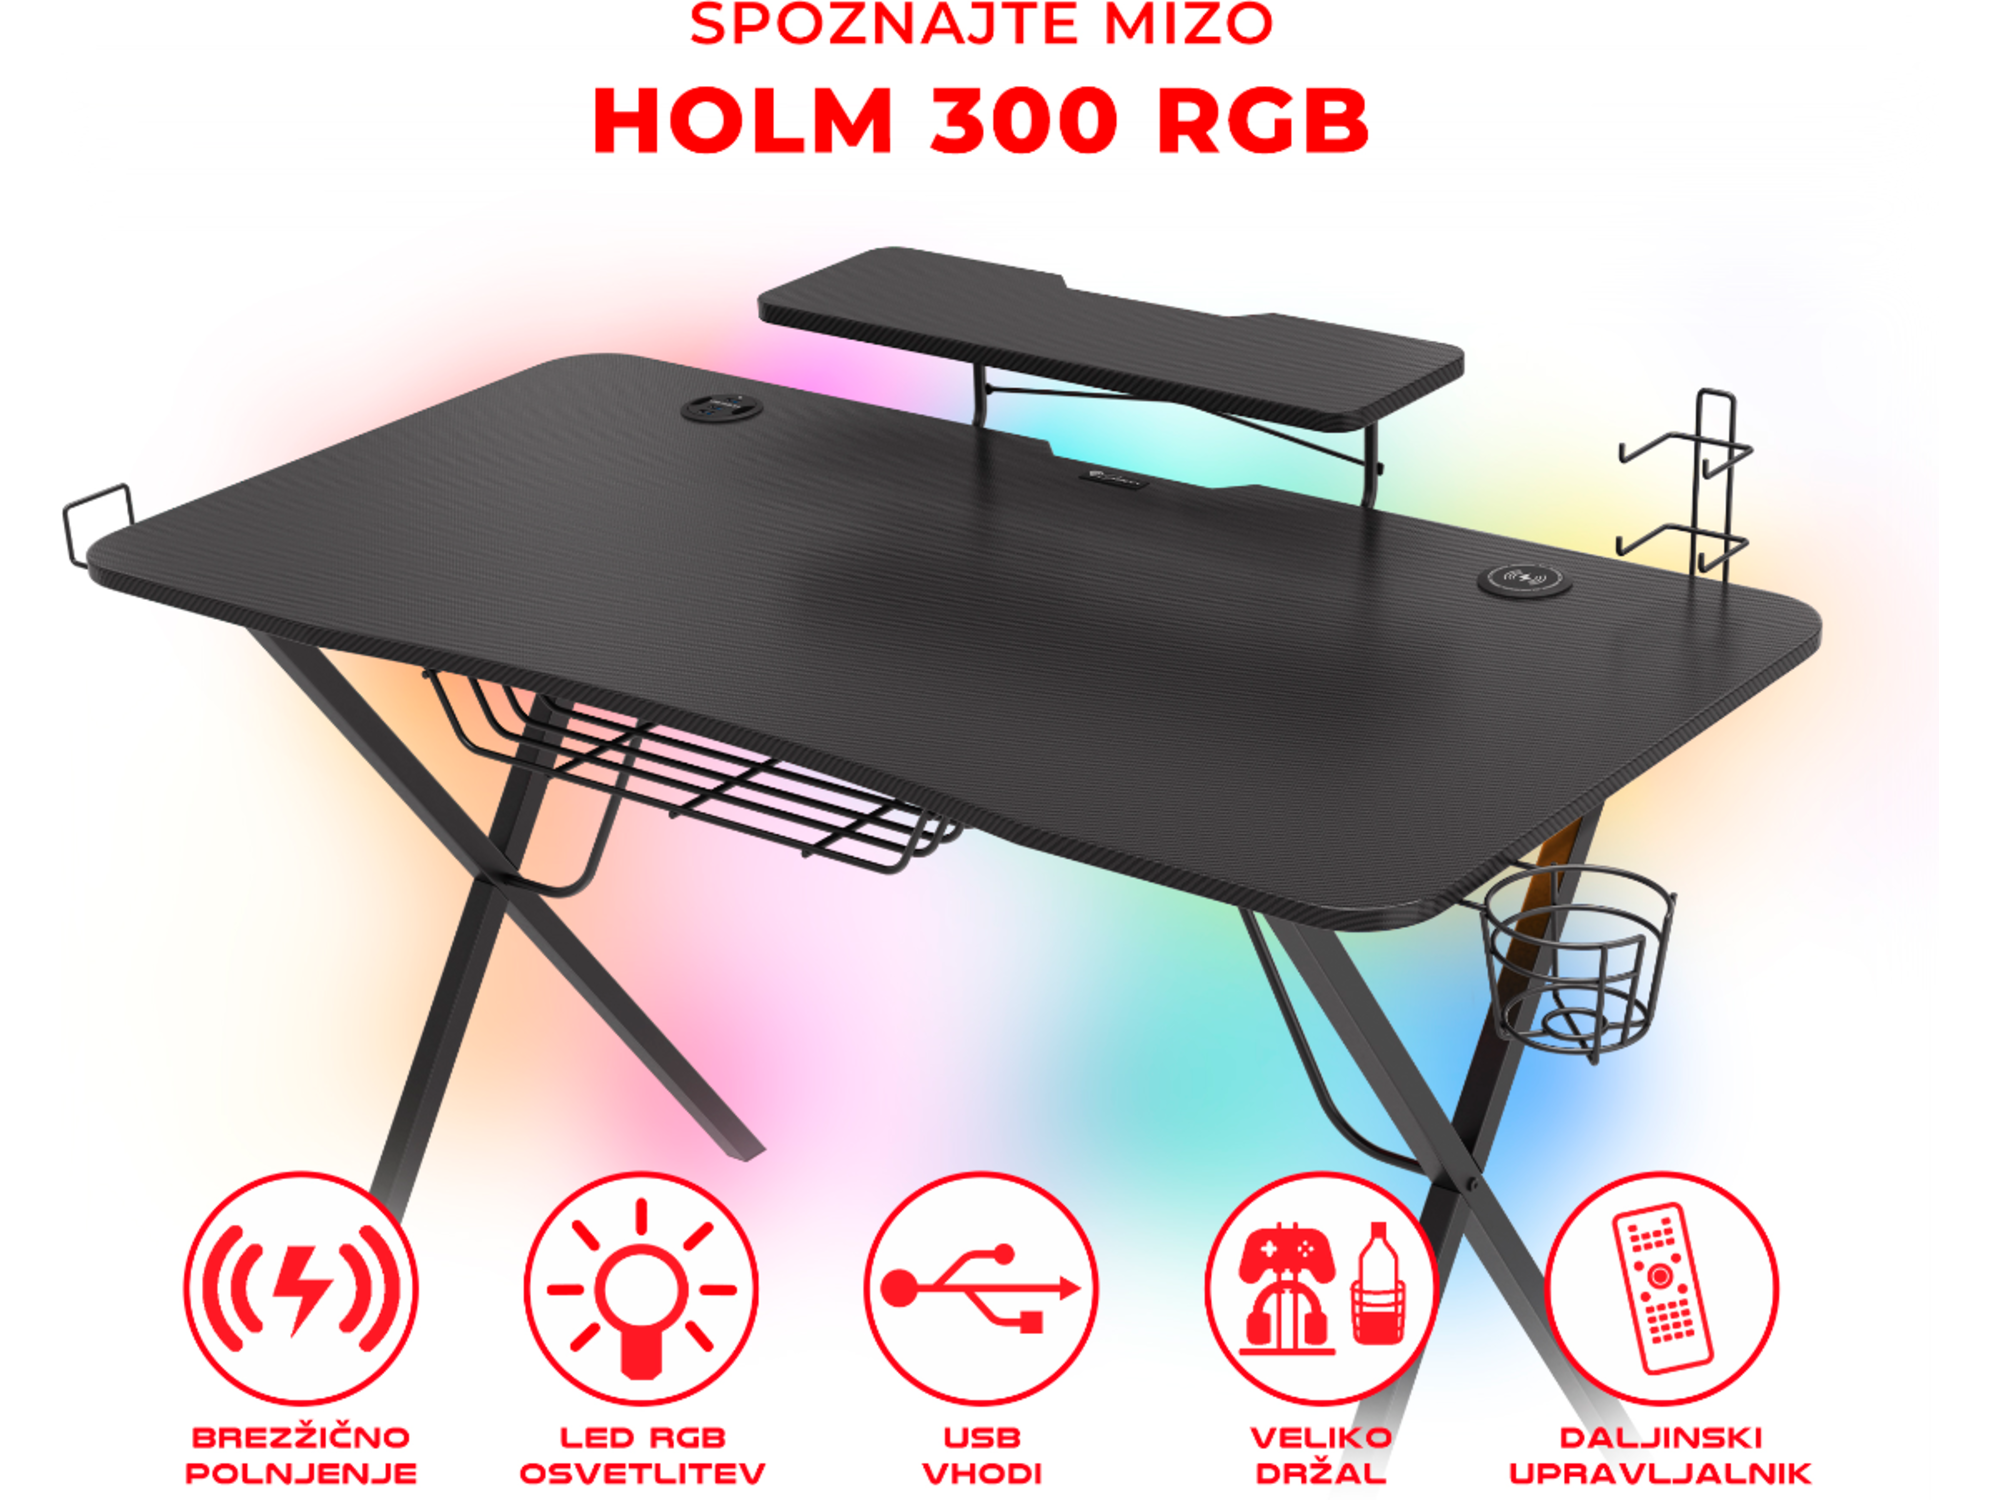 GENESIS profesionalna gaming miza HOLM 300 RGB